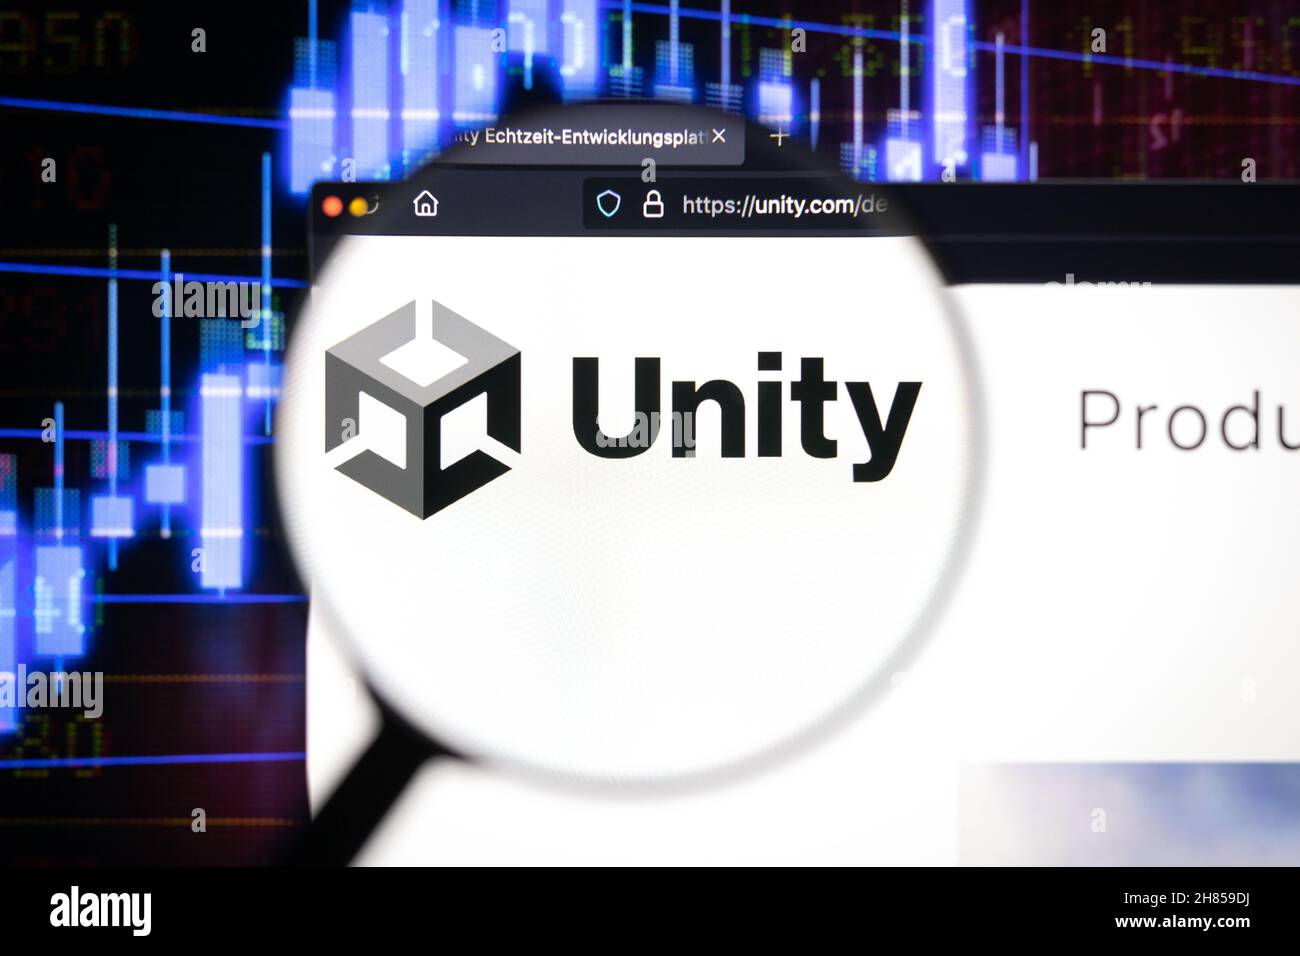 Unity Game Engine Company logo en un sitio web, visto en una pantalla de computadora a través de una lupa. Foto de stock